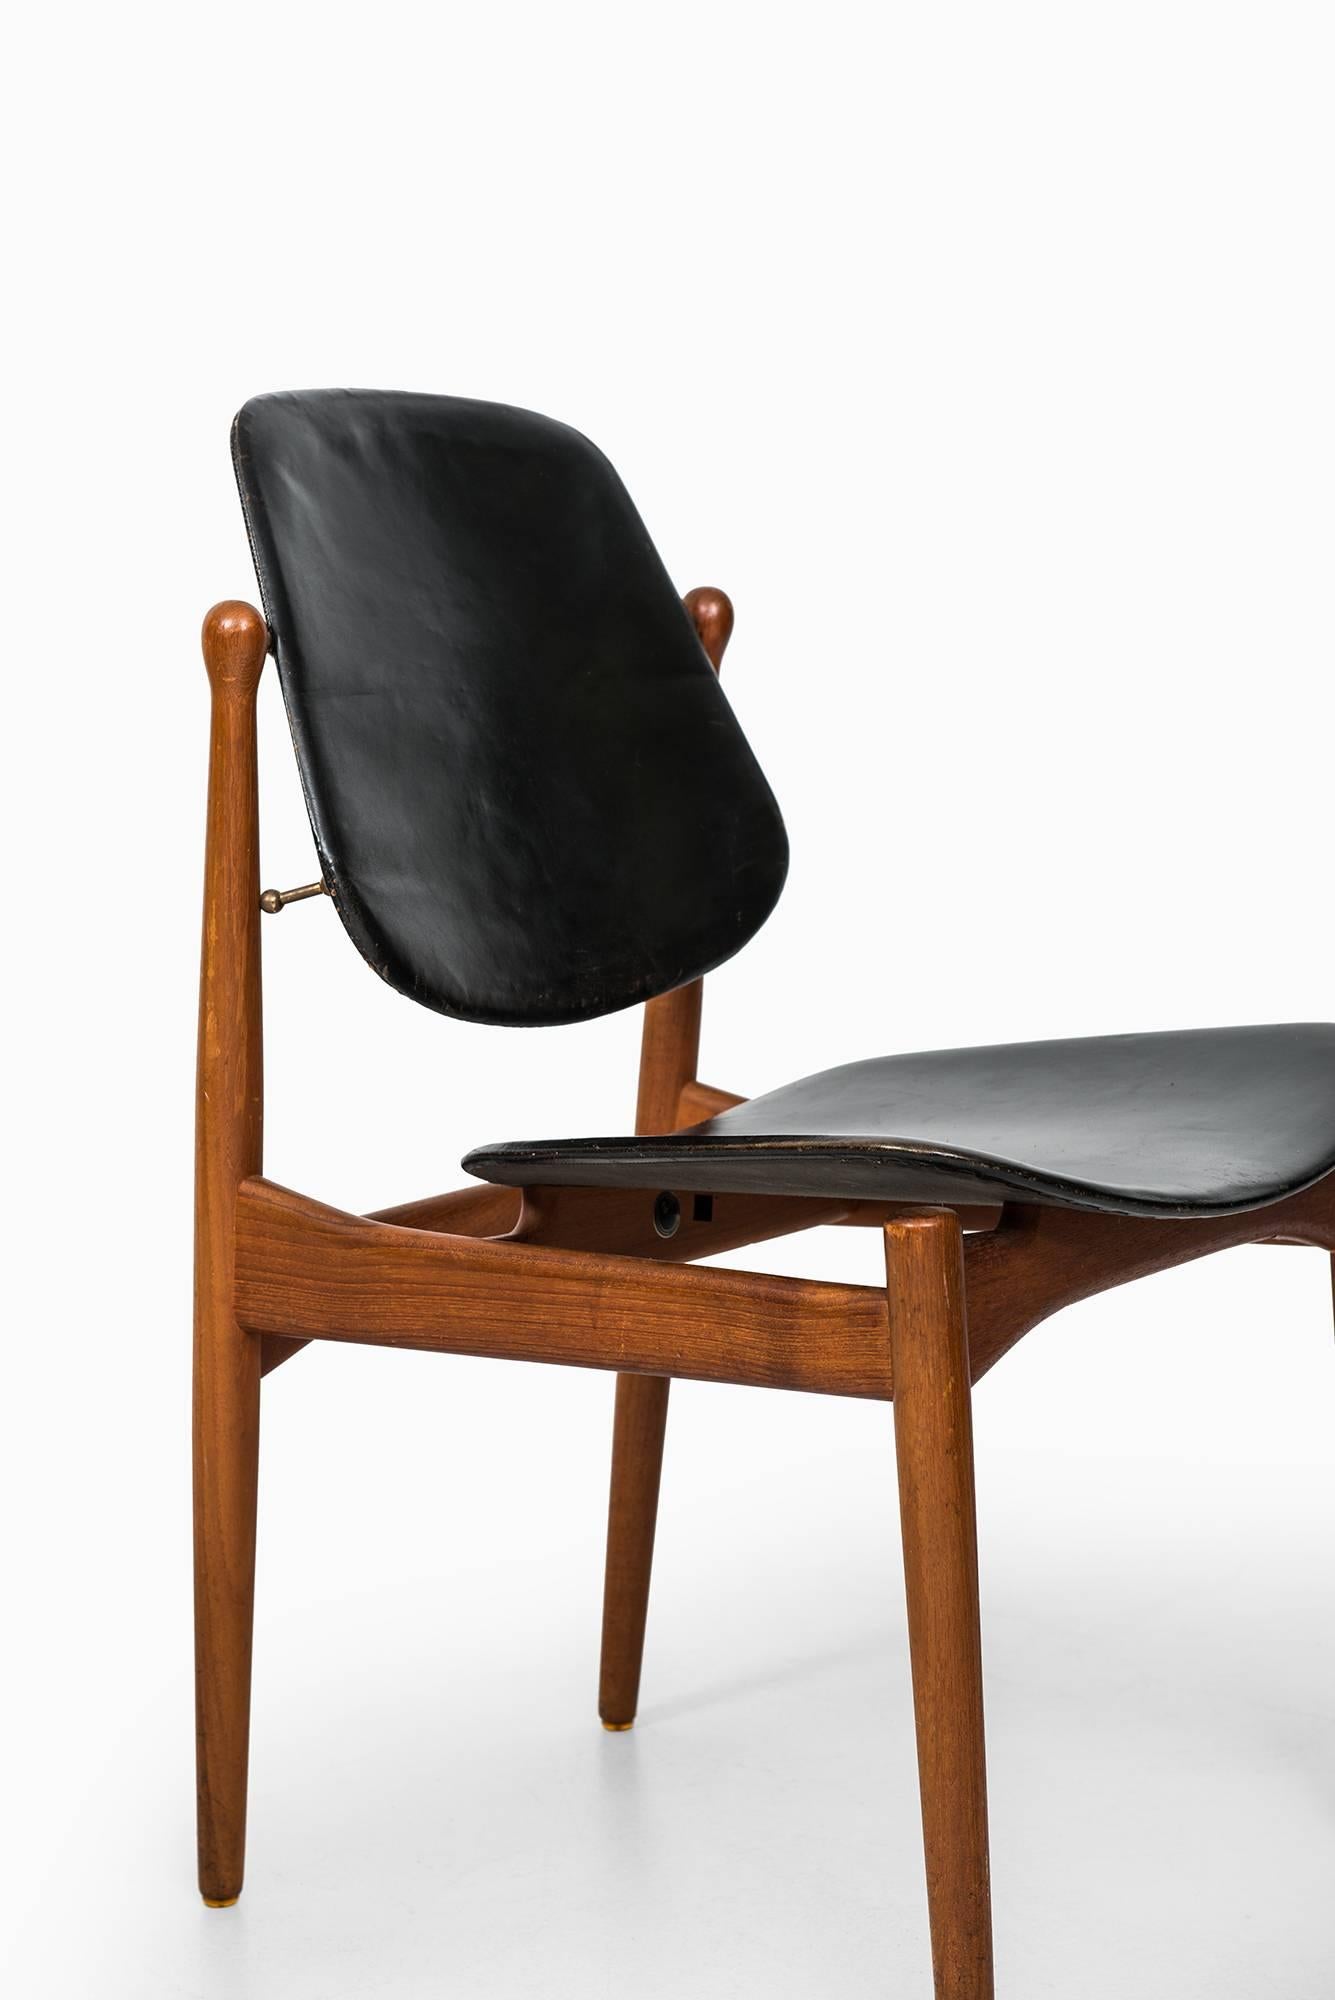 Danish Arne Vodder Dining Chairs Model 203 by France & Son in Denmark